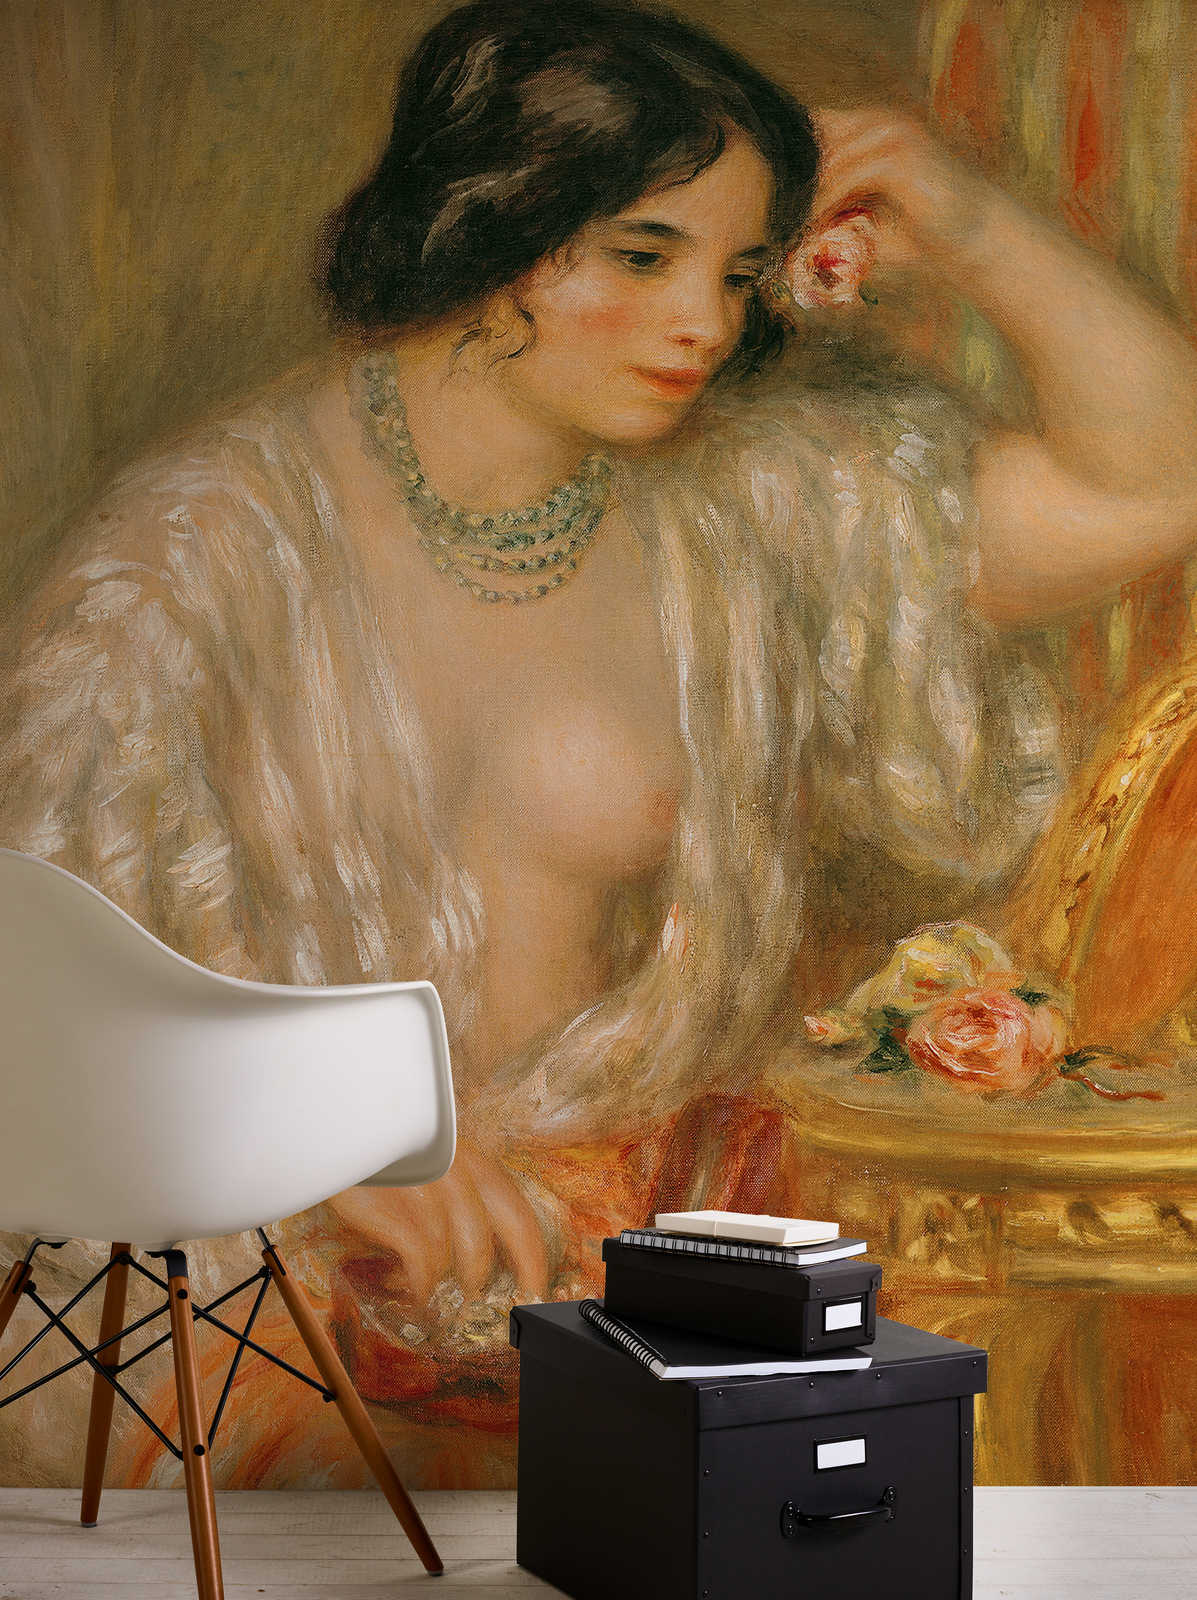             Fotomurali "Gabrielle con portagioie" di Pierre Auguste Renoir
        